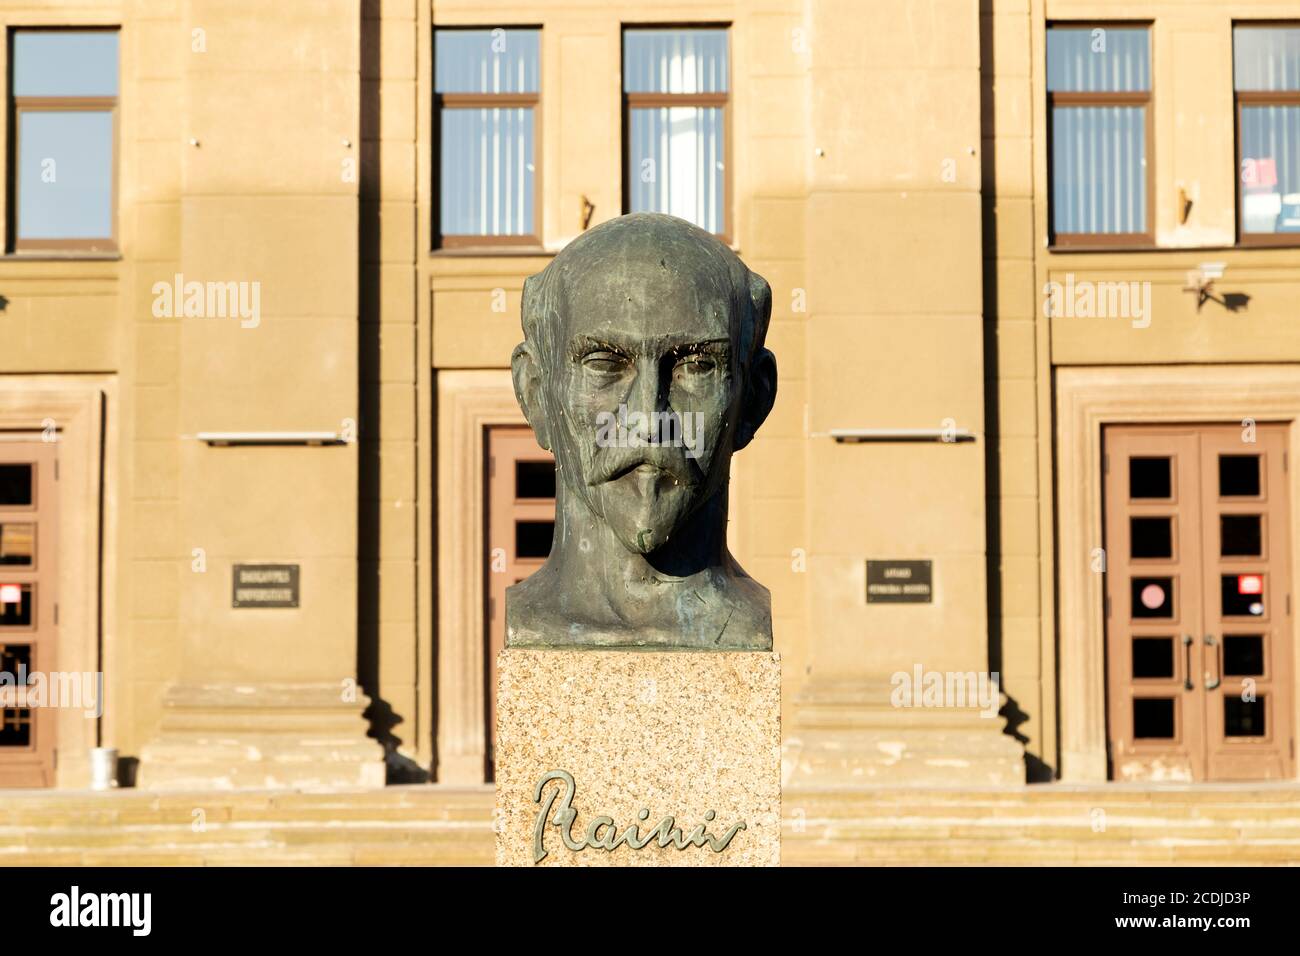 Statue of Rainis, a celebrated Latvia poet, outside of Daugavpils University in Daugavpils, Latvia. Rainis was a pseudonym for Jānis Pliekšāns (1865-1 Stock Photo